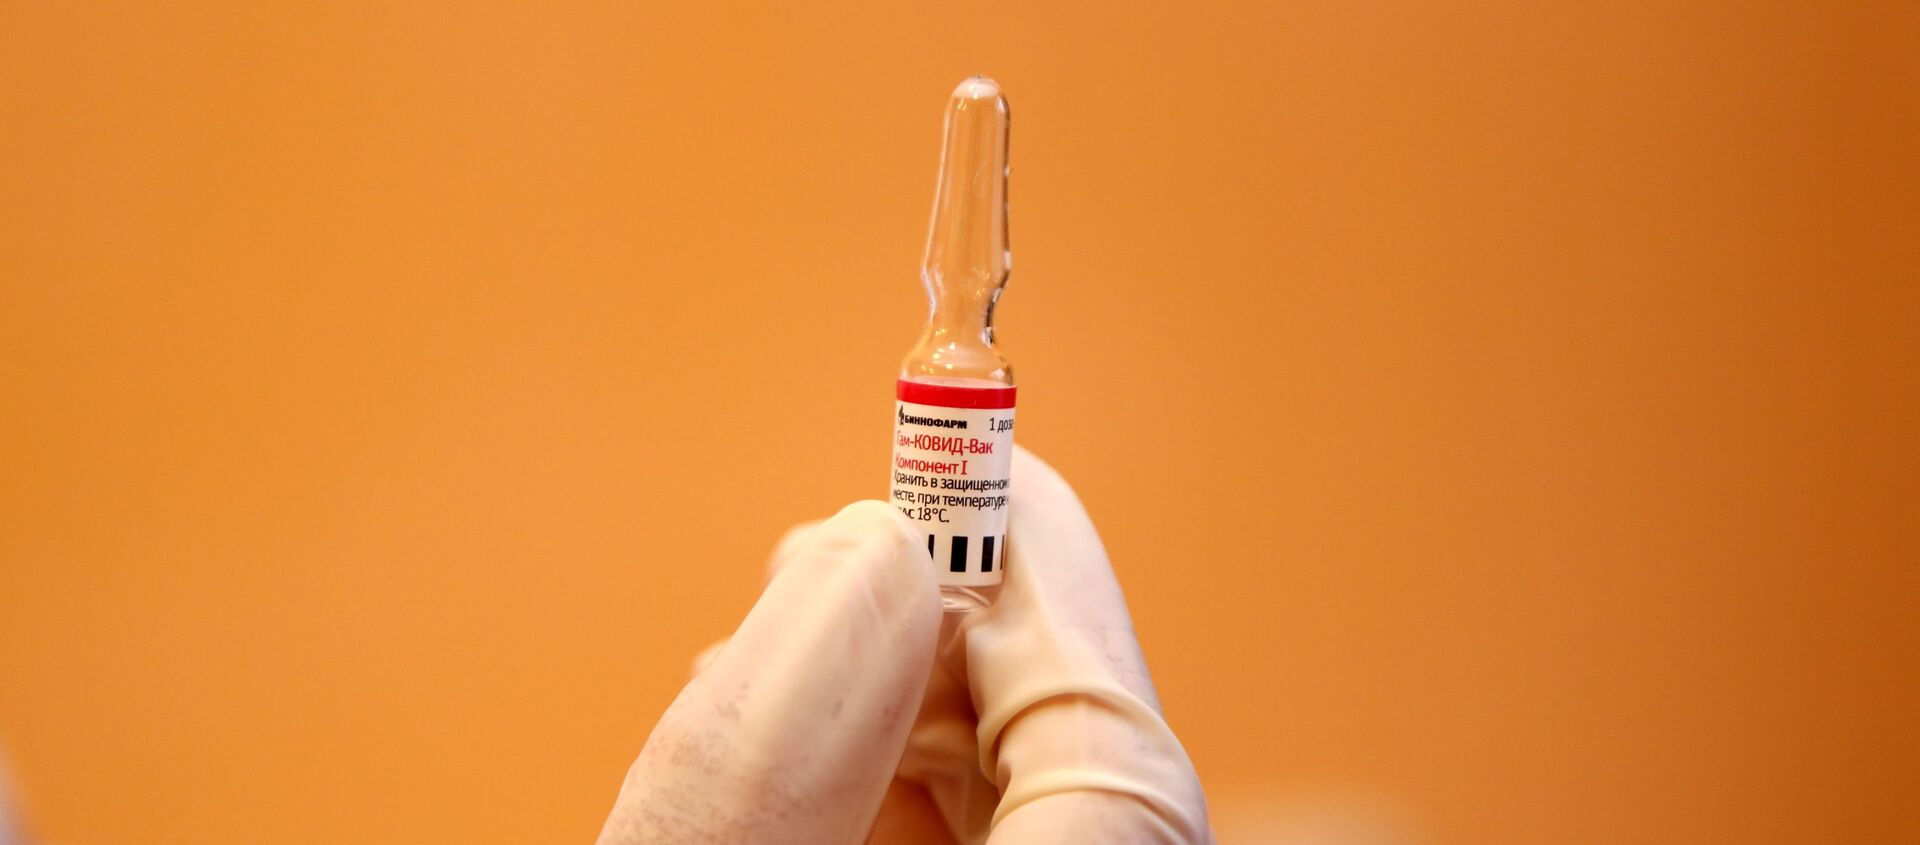 Медицина кызматкери COVID-19га каршы Спутник V вакцинасын кармап турат - Sputnik Кыргызстан, 1920, 04.02.2021